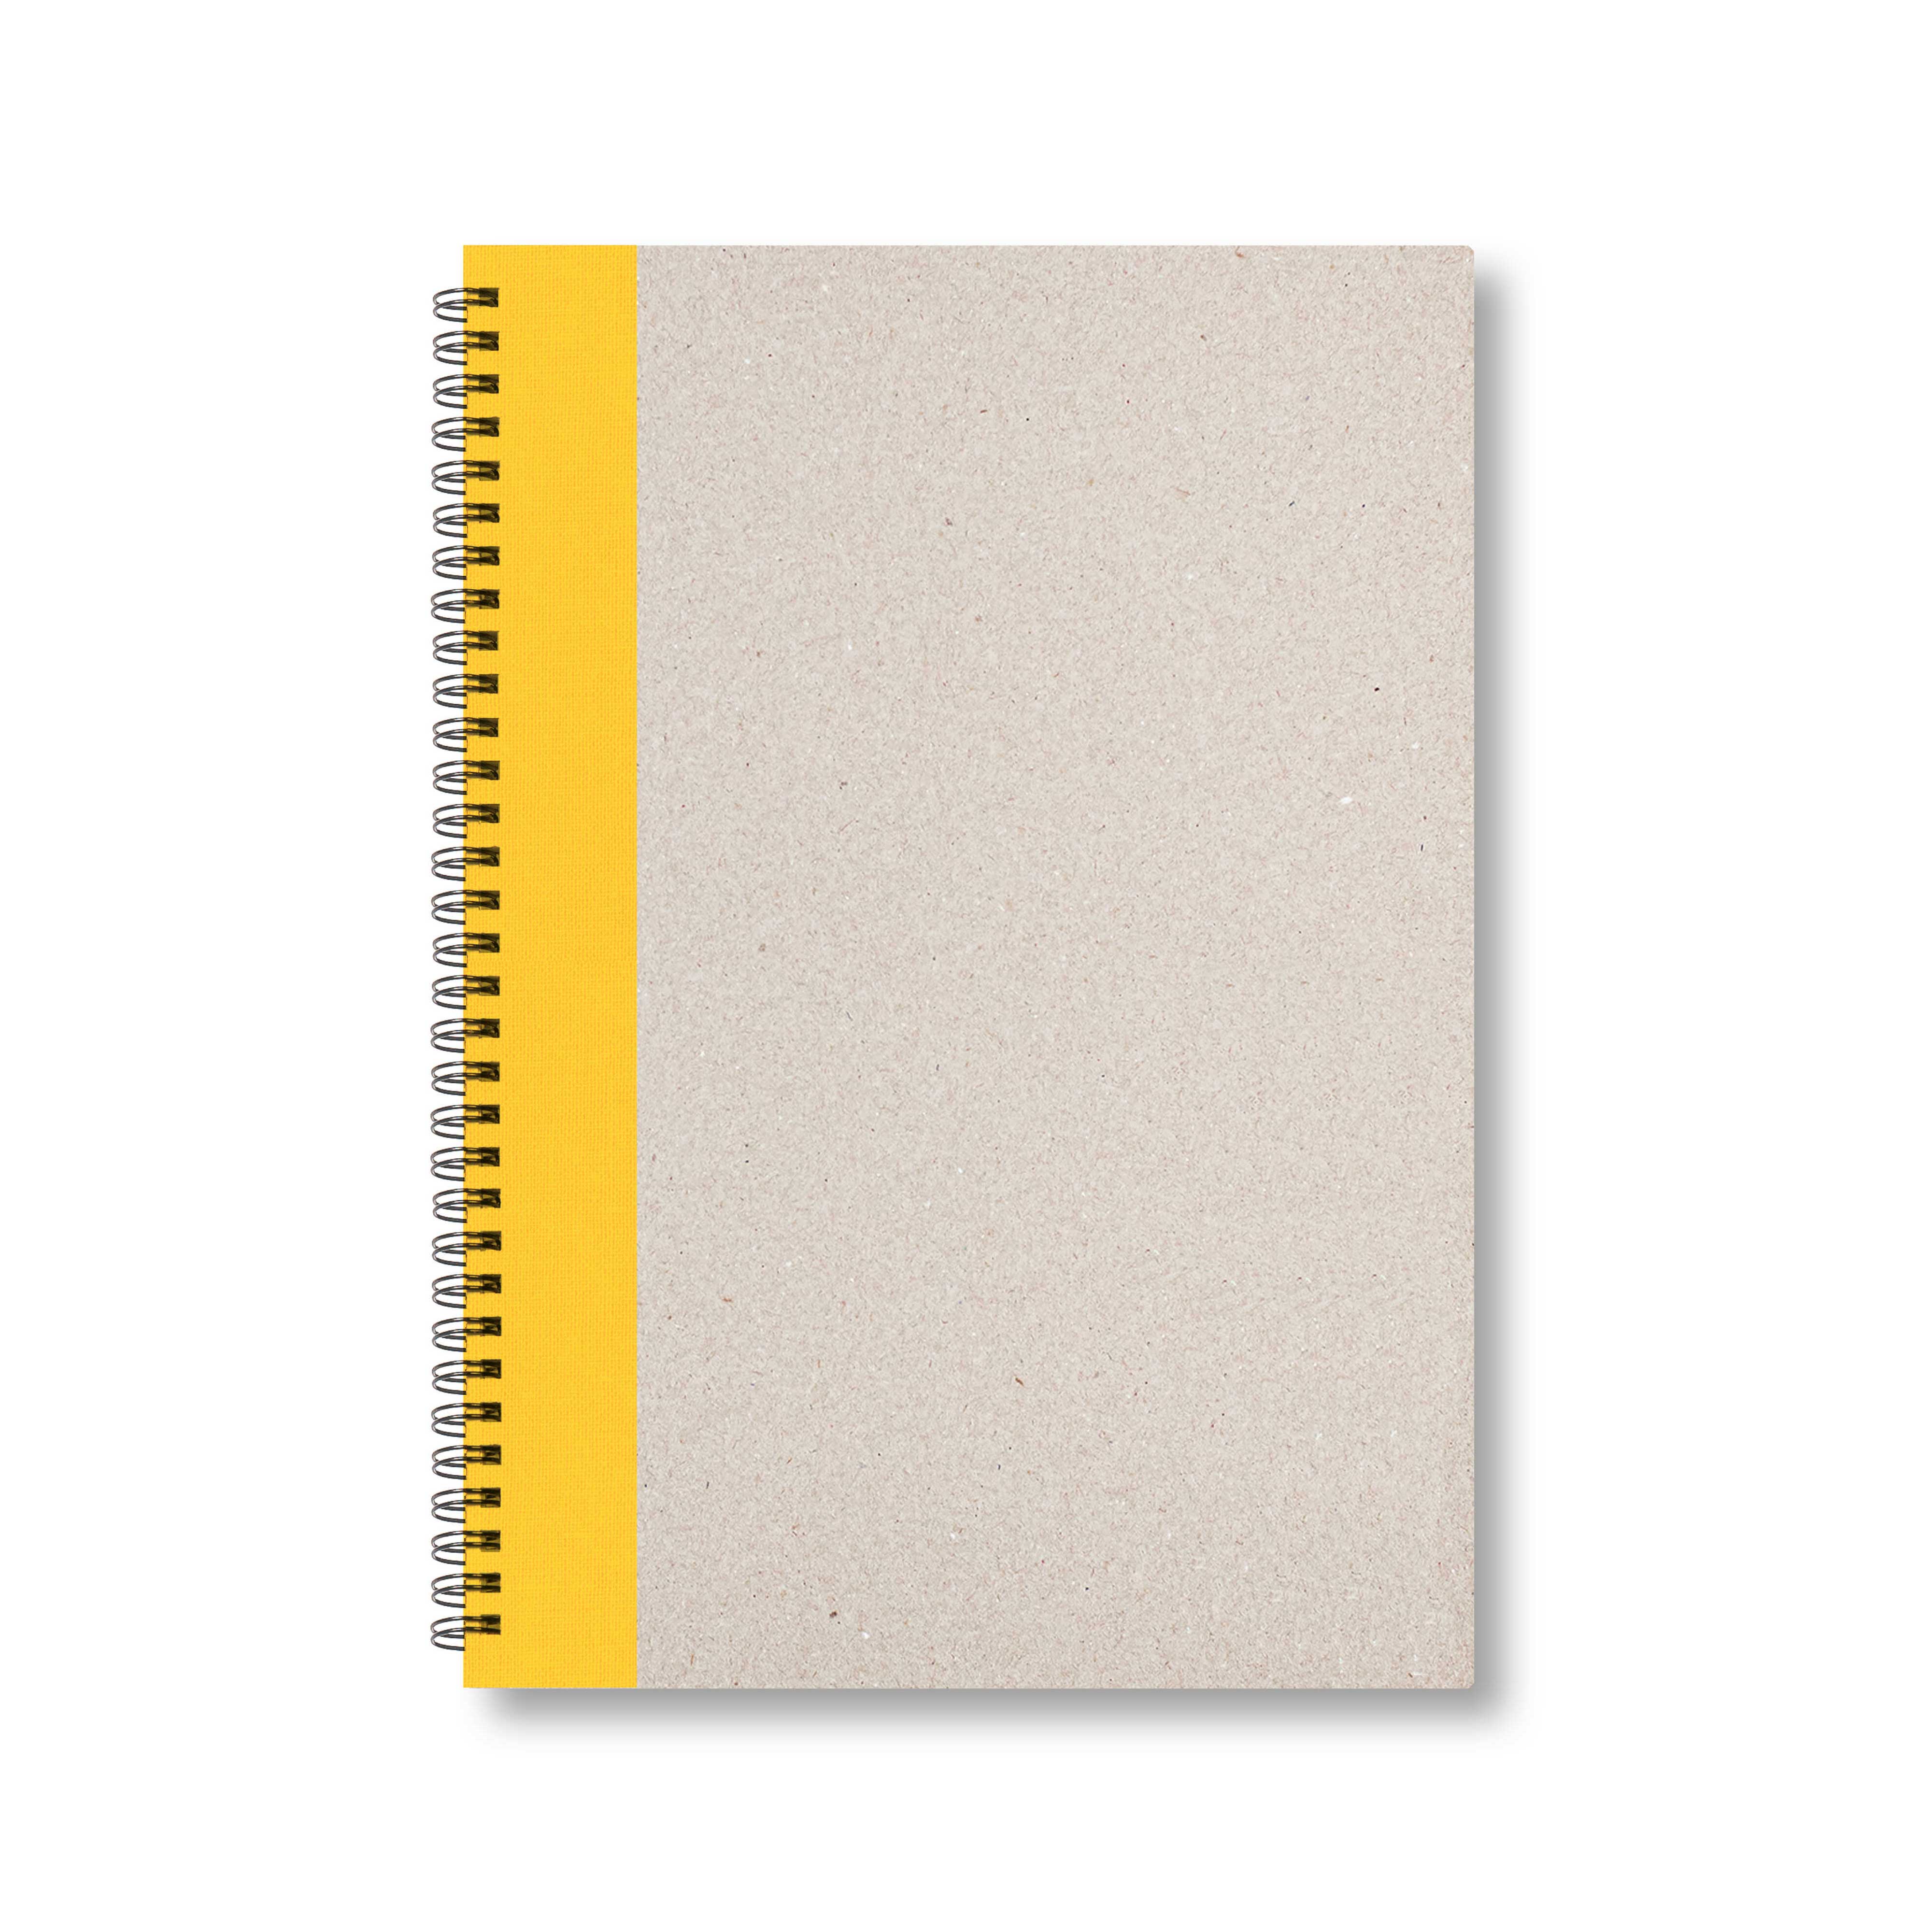 BOBO Zápisník, B5, linkovaný, žlutý, konfiguruj si obálku